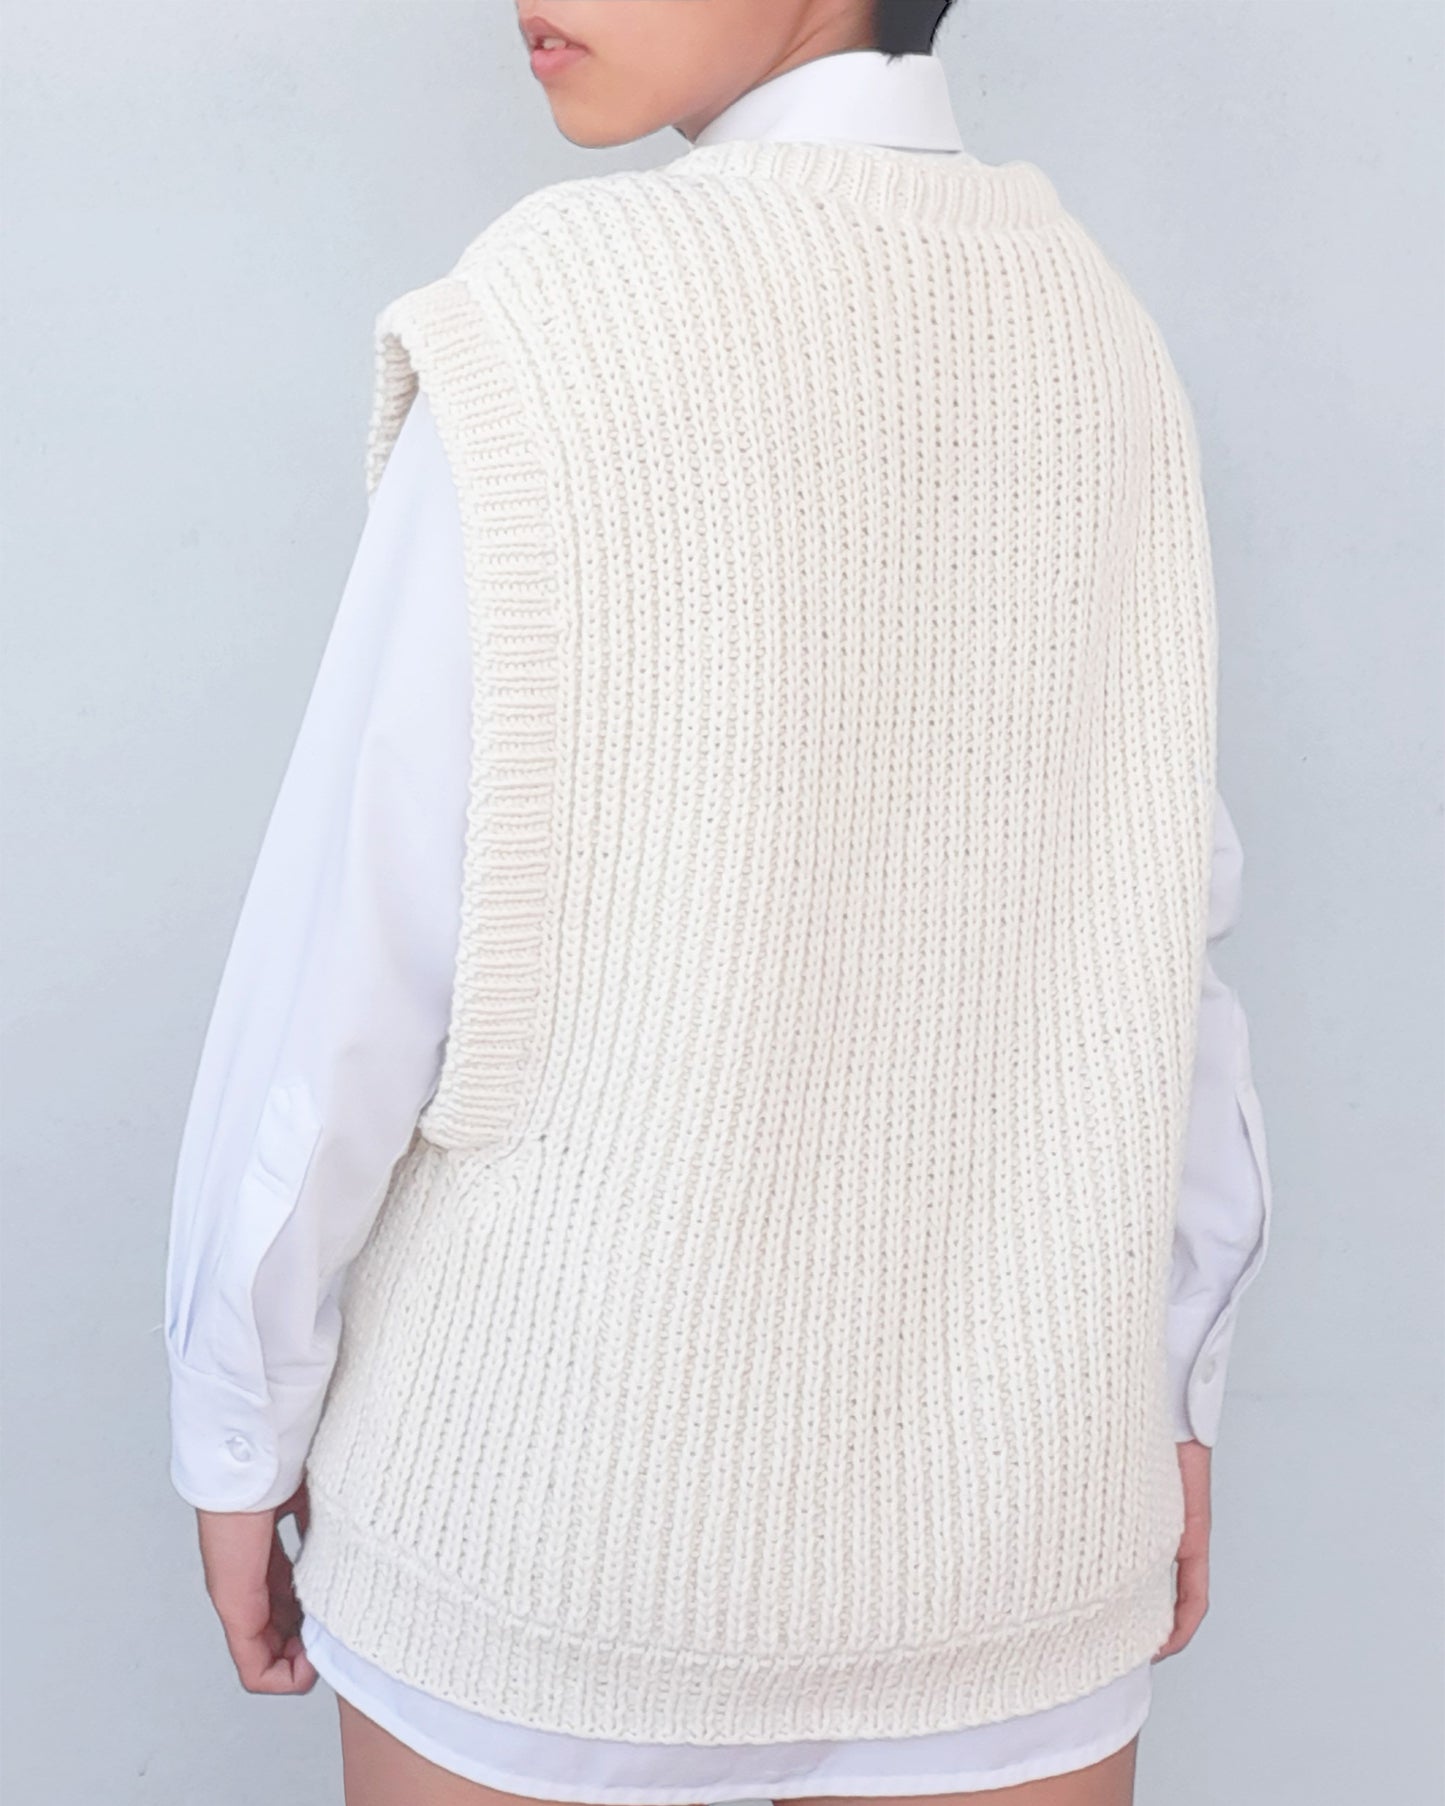 Vest No.2 | Oversized vest knitting pattern